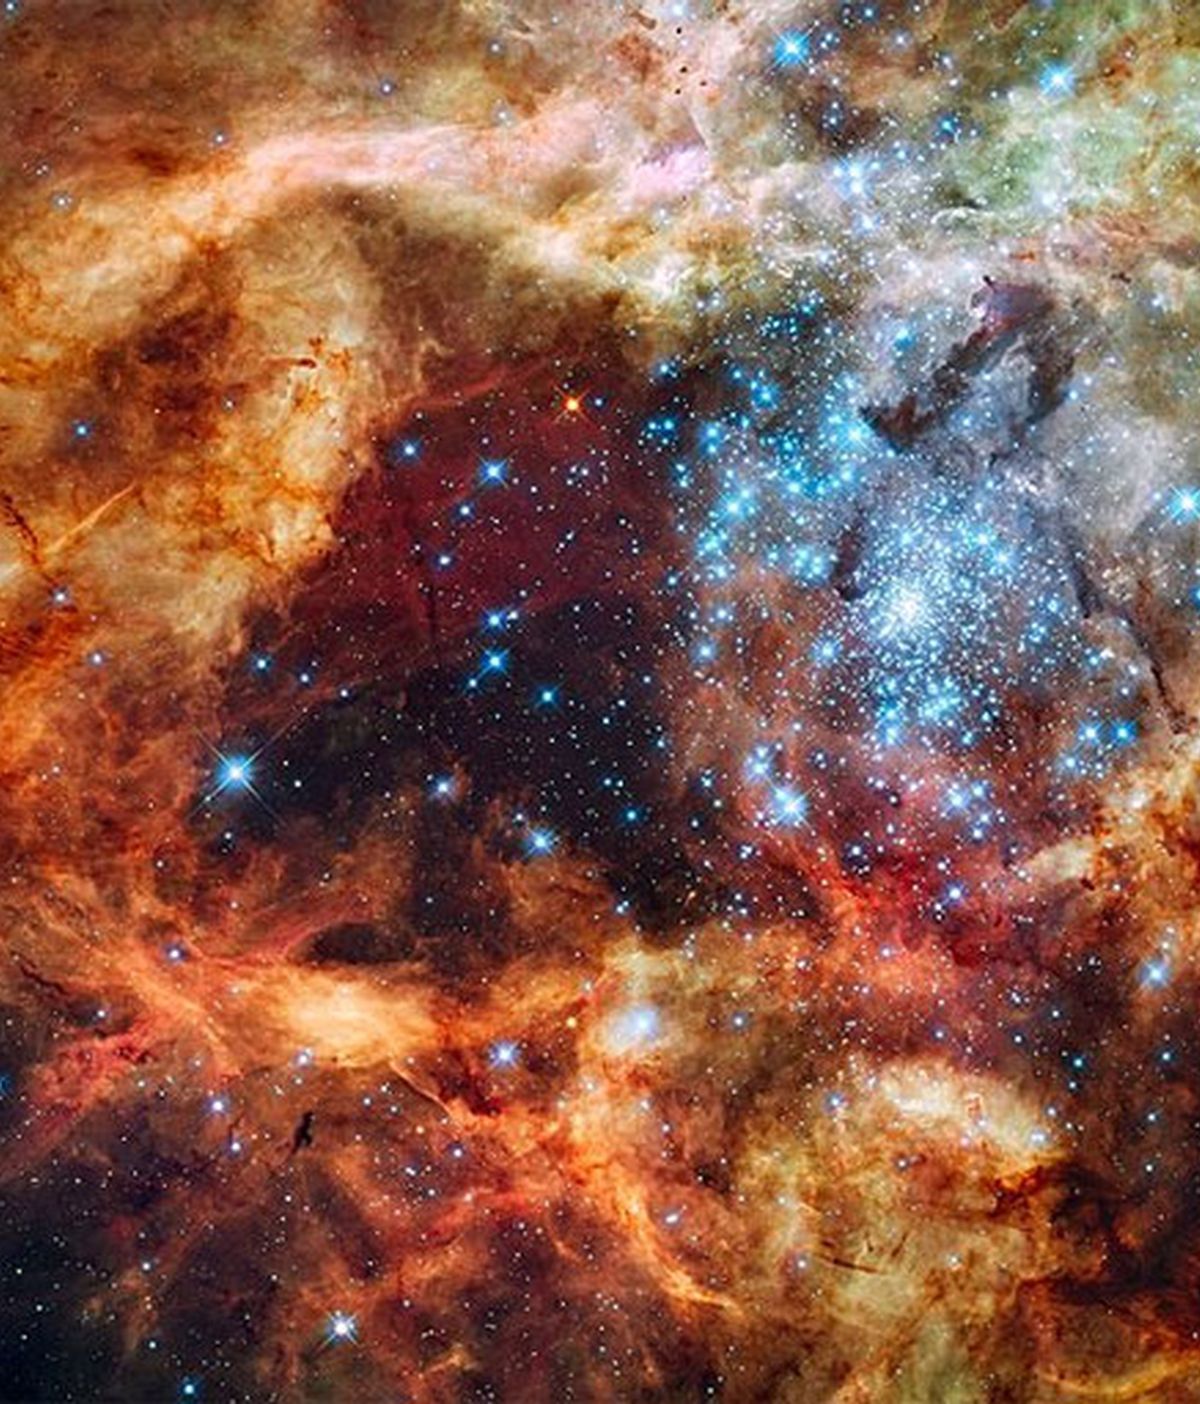 La estrella, denominada R136a, a unos 165.000 años luz de distancia, tiene una masa actual de 265 masas solares. Foto: Hubble Space Telescope.